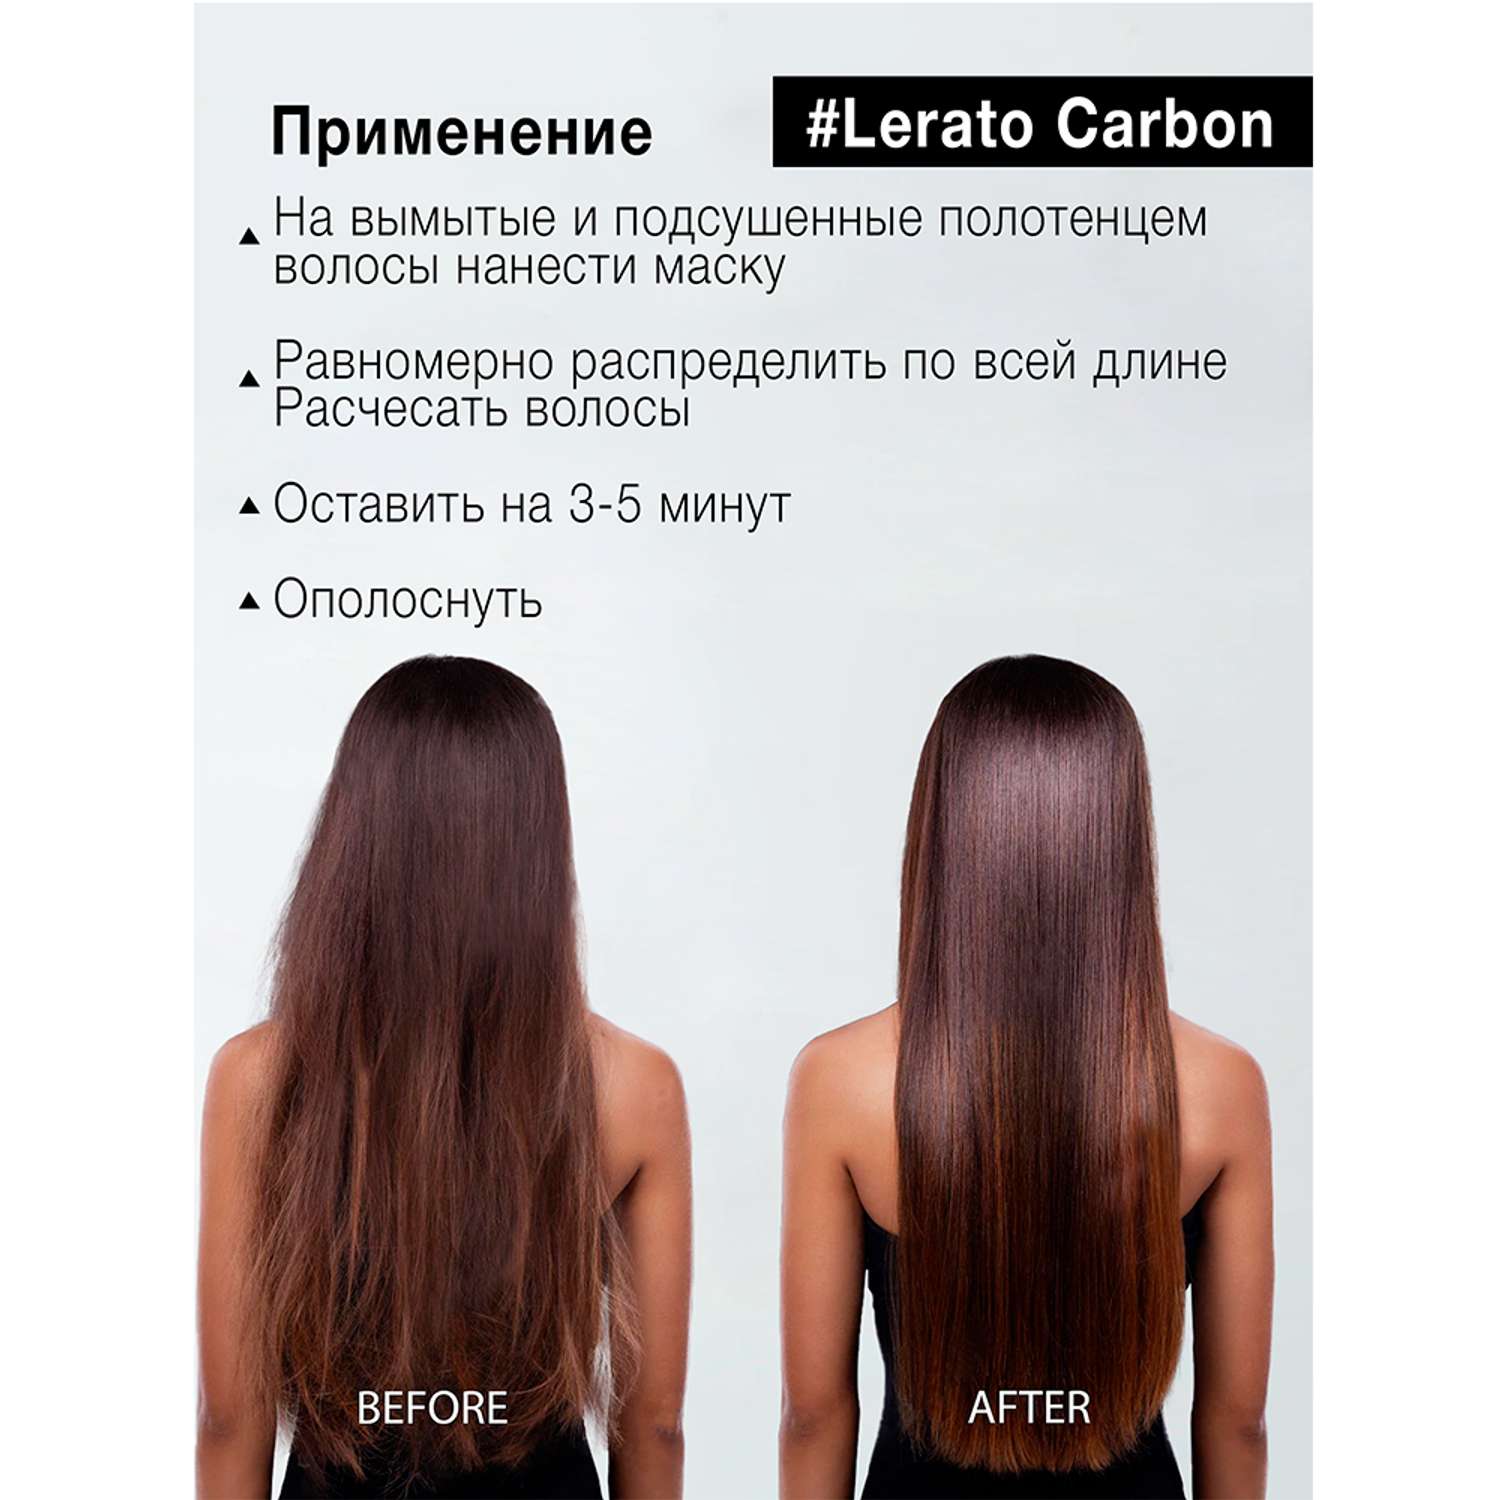 Маска для волос Lerato Cosmetic угольная с эффектом восстановления от химических процедур 300 мл - фото 7